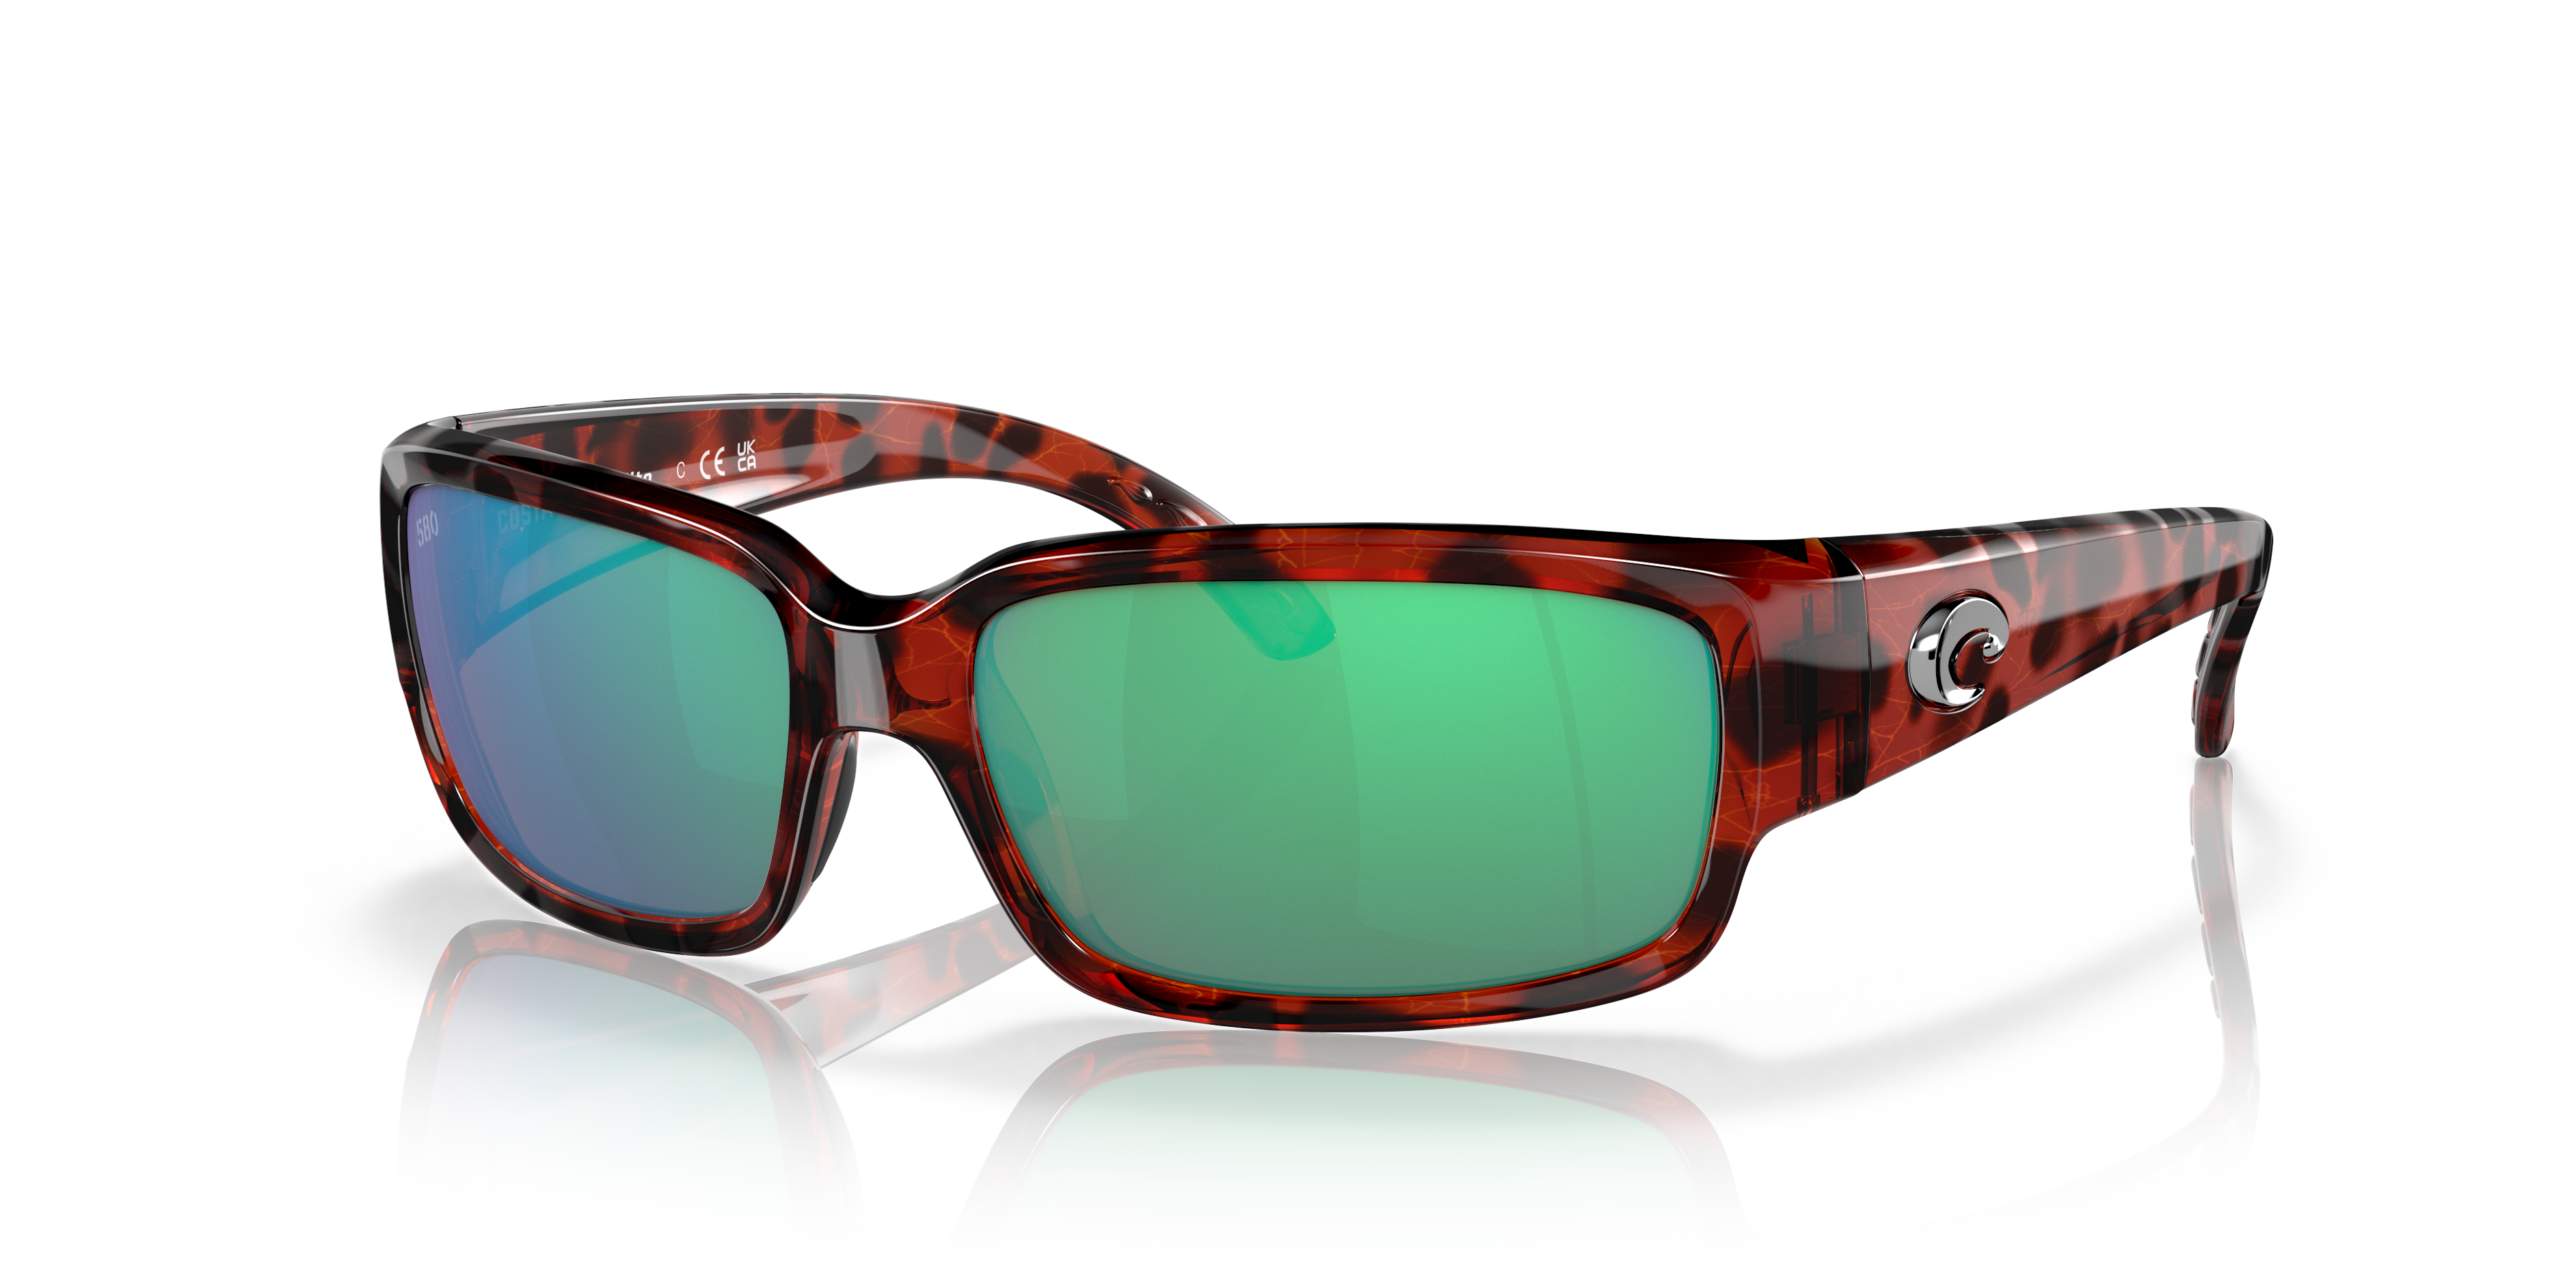 New Costa del Mar CABALLITO polarized sunglasses Black/GREEN mirror 400g glass 